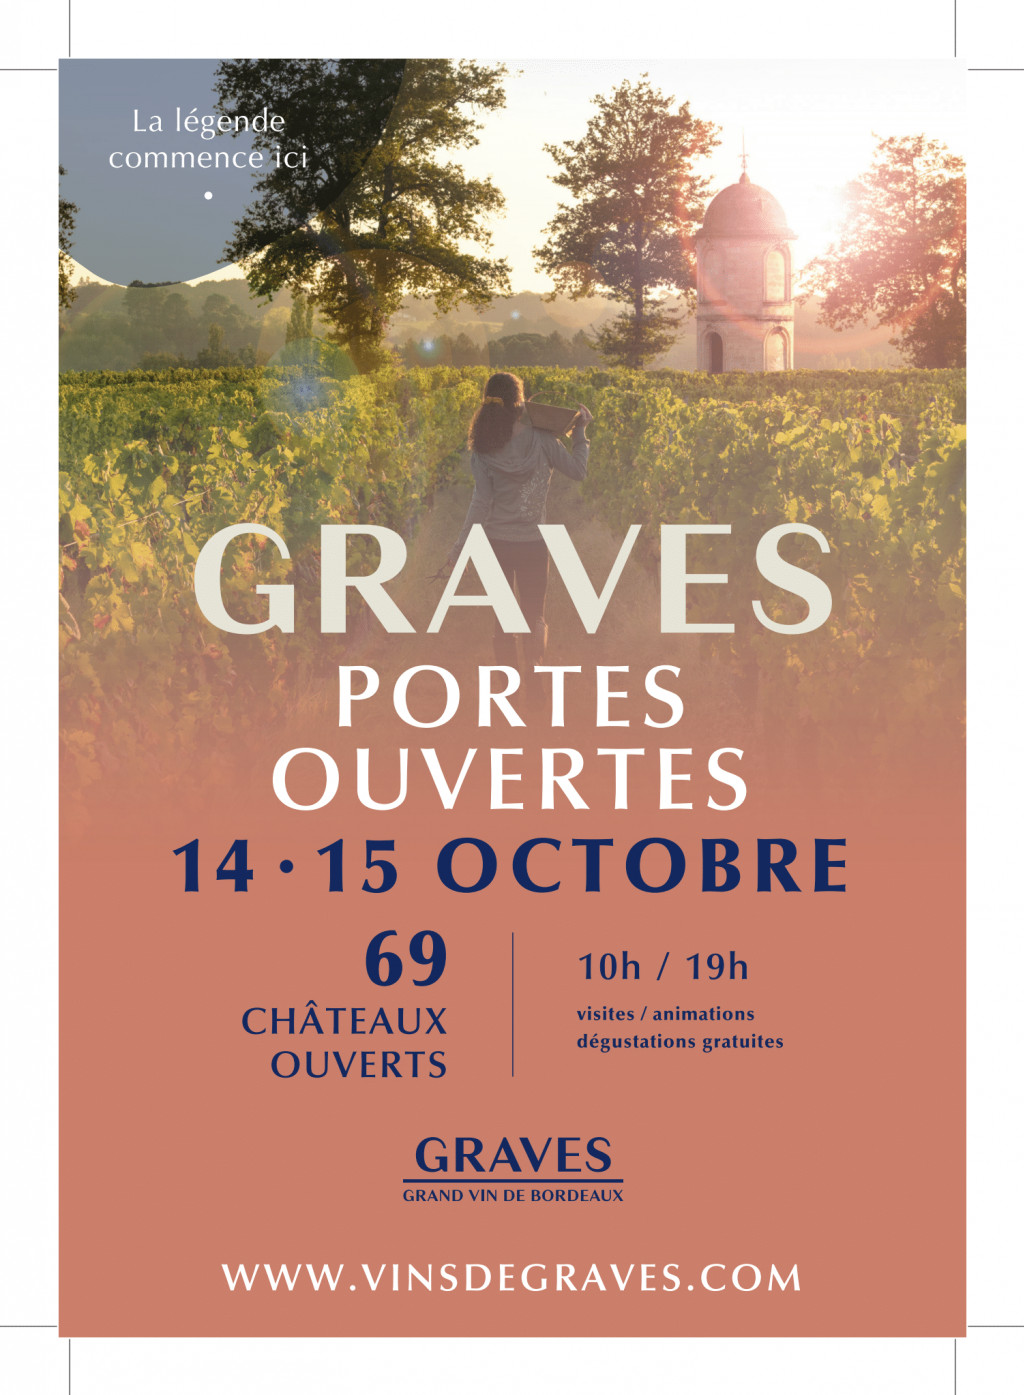 Les portes ouvertes en Graves les 14 et 15 octobre